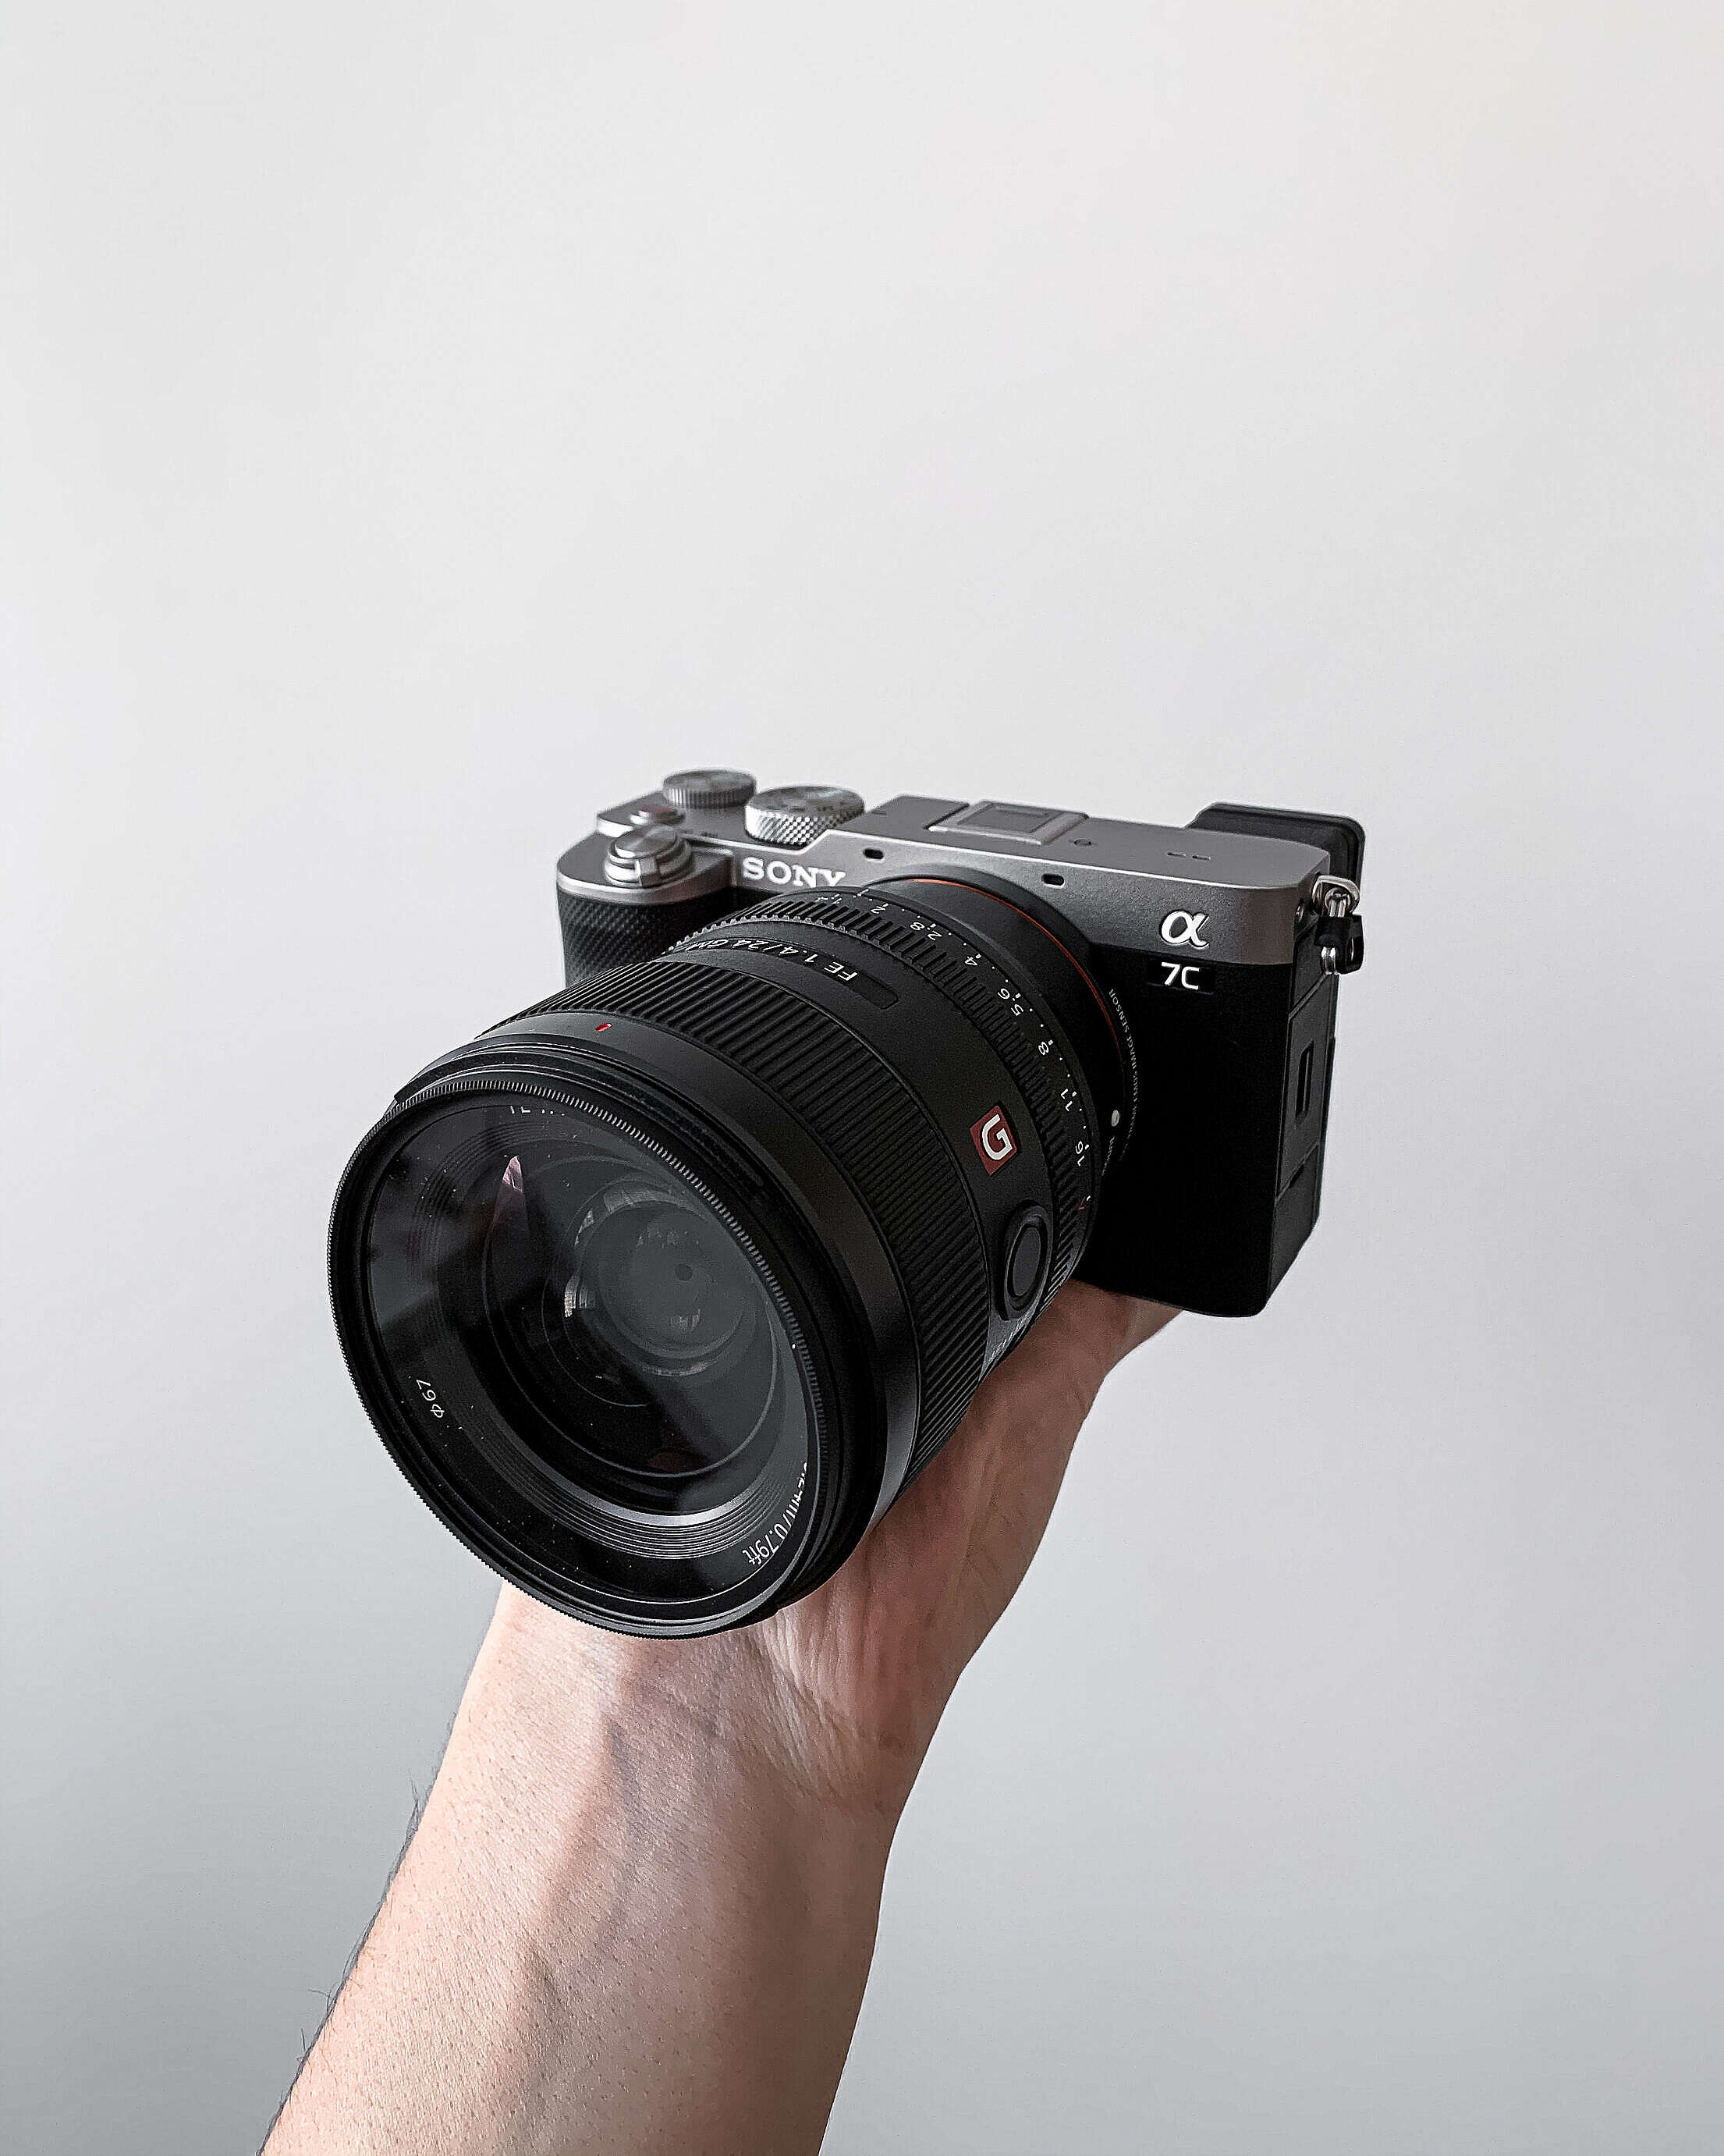 New Camera Sony A7C Free Stock Photo